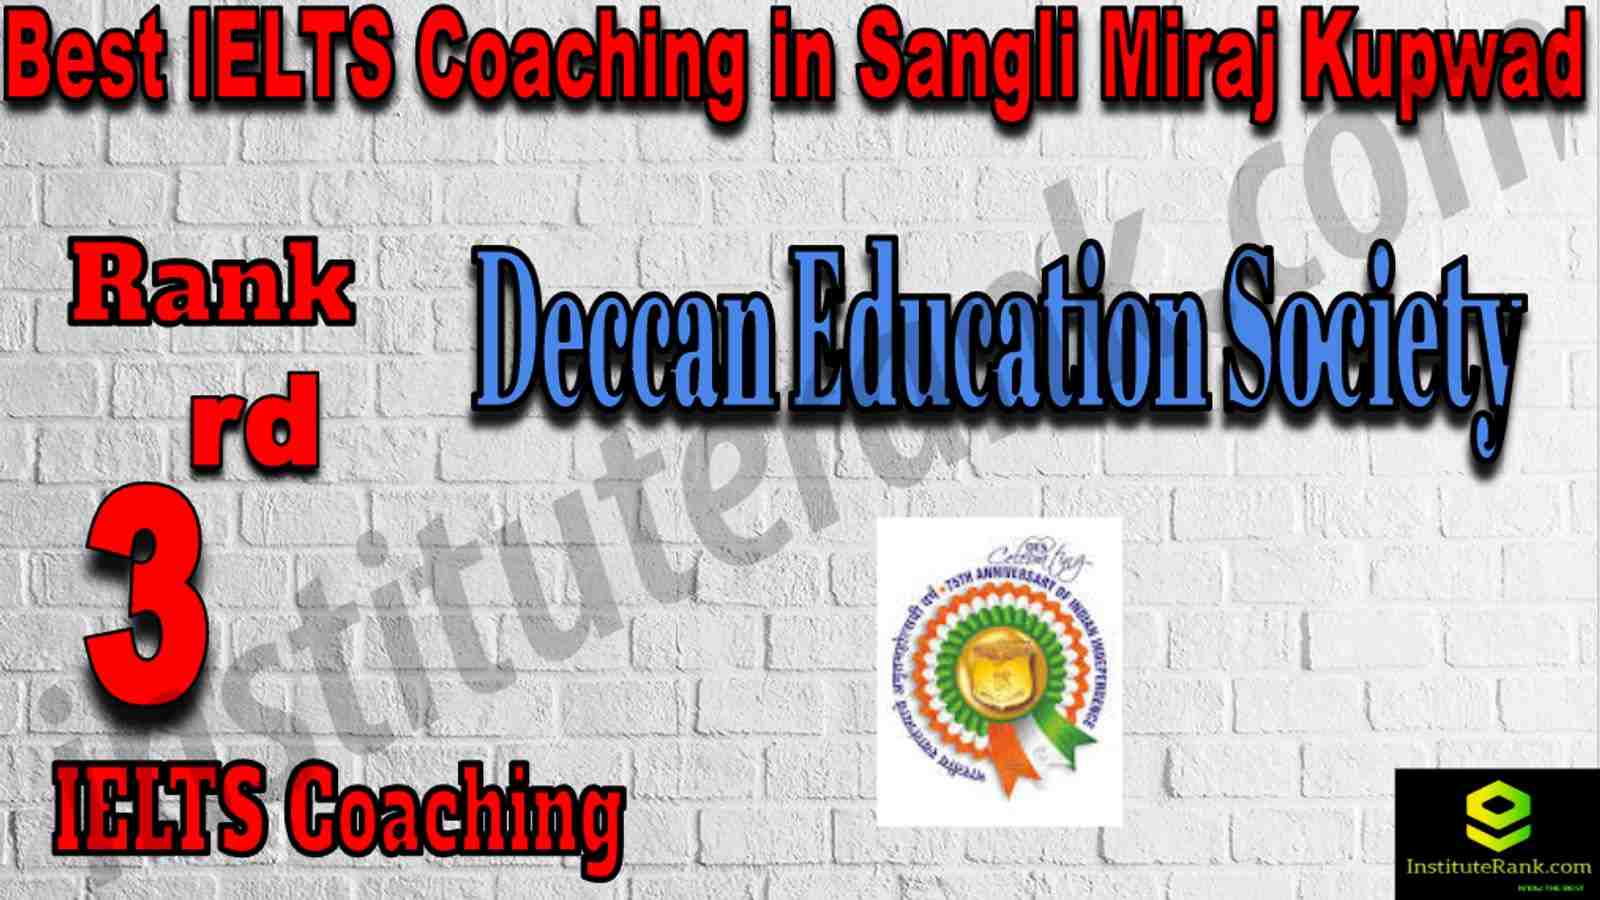 3rd Best IELTS Coaching in Sangli Miraj Kupwad